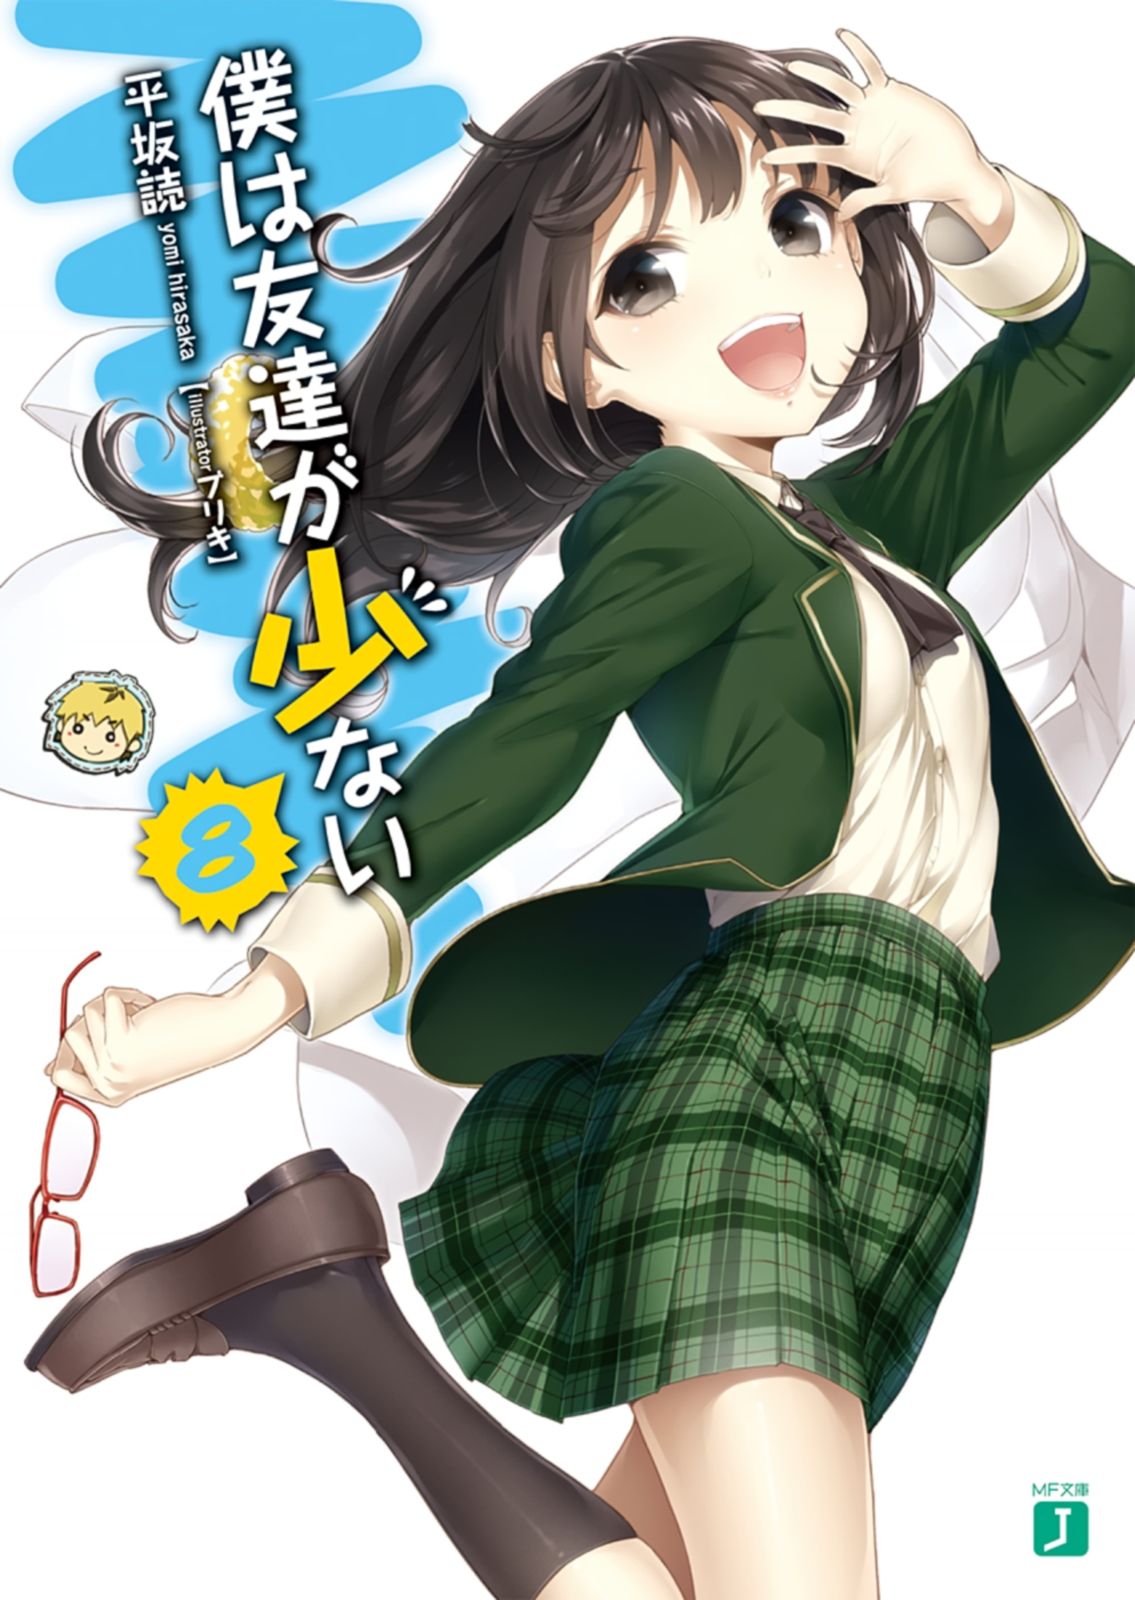 [Ruidrive] - Ilustrasi Light Novel Boku wa Tomodachi ga Sukunai - Volume 08 - 01